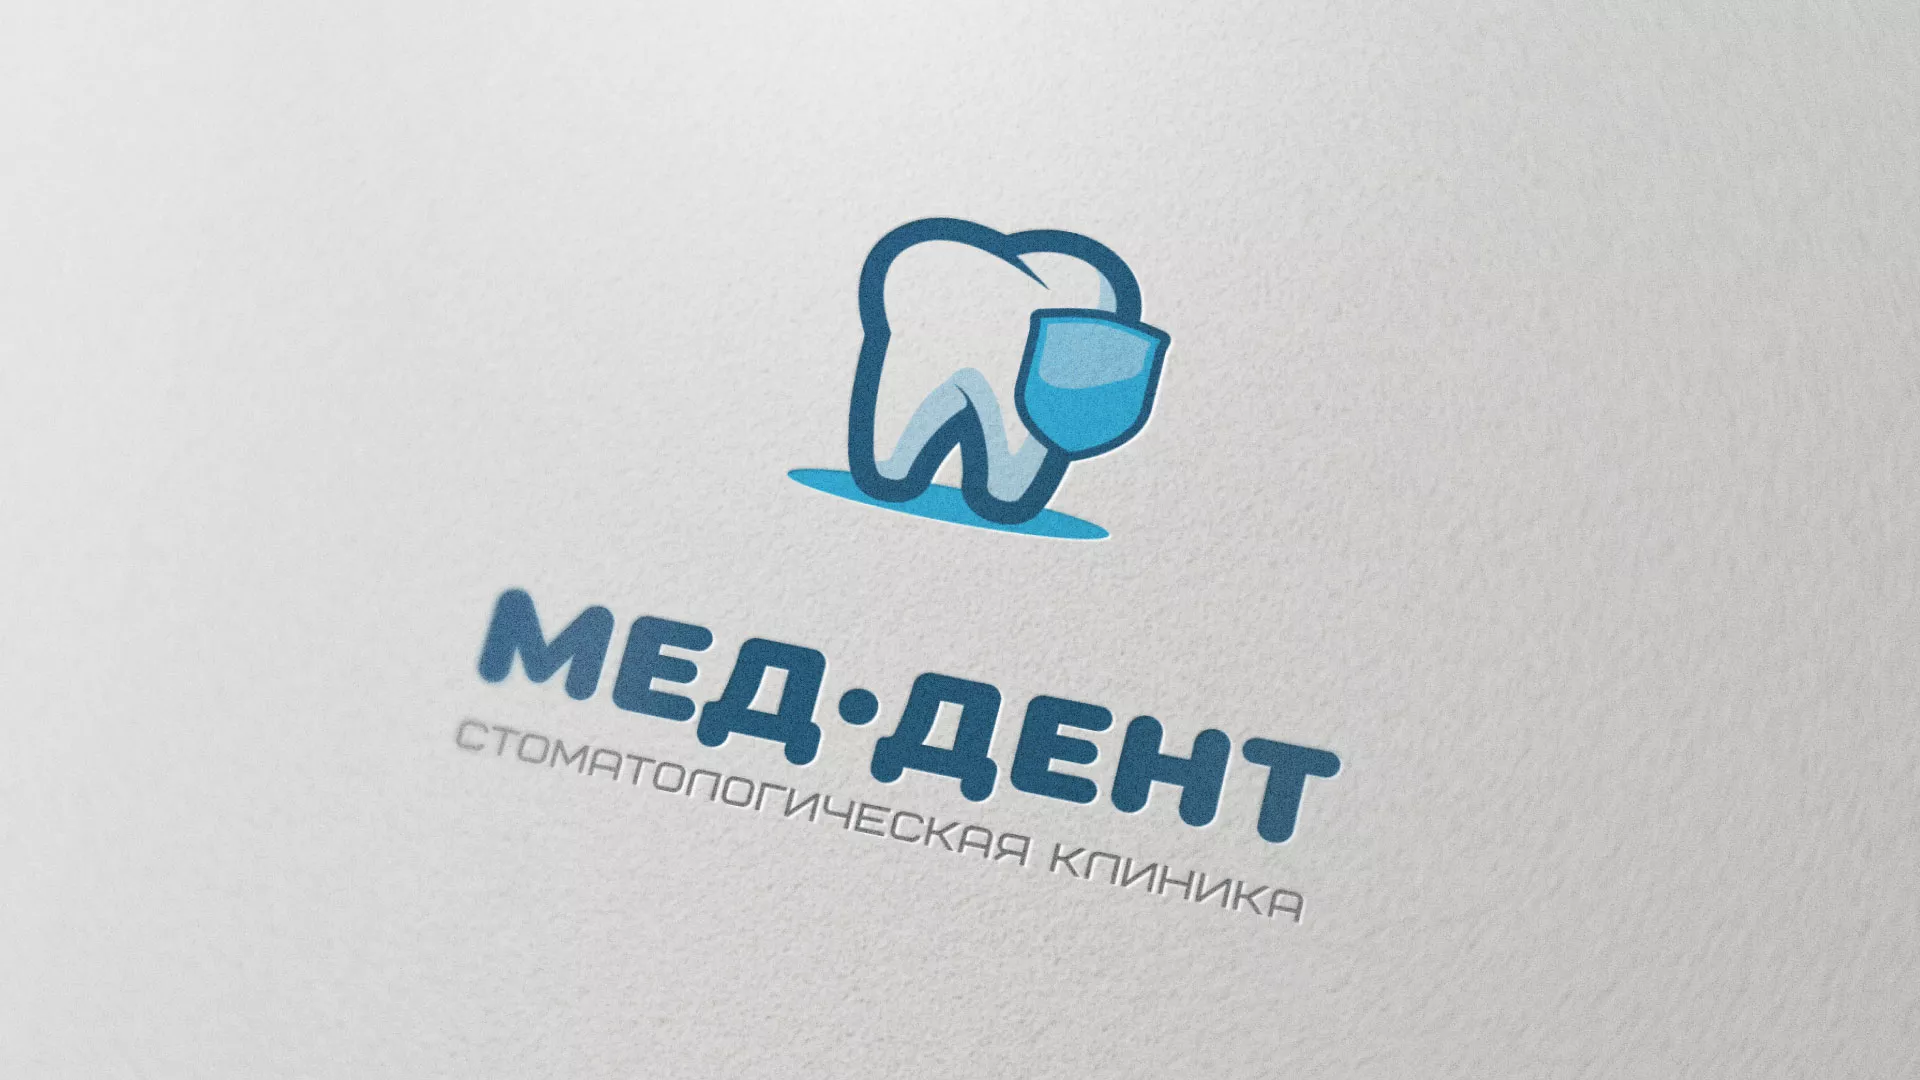 Разработка логотипа стоматологической клиники «МЕД-ДЕНТ» в Шлиссельбурге